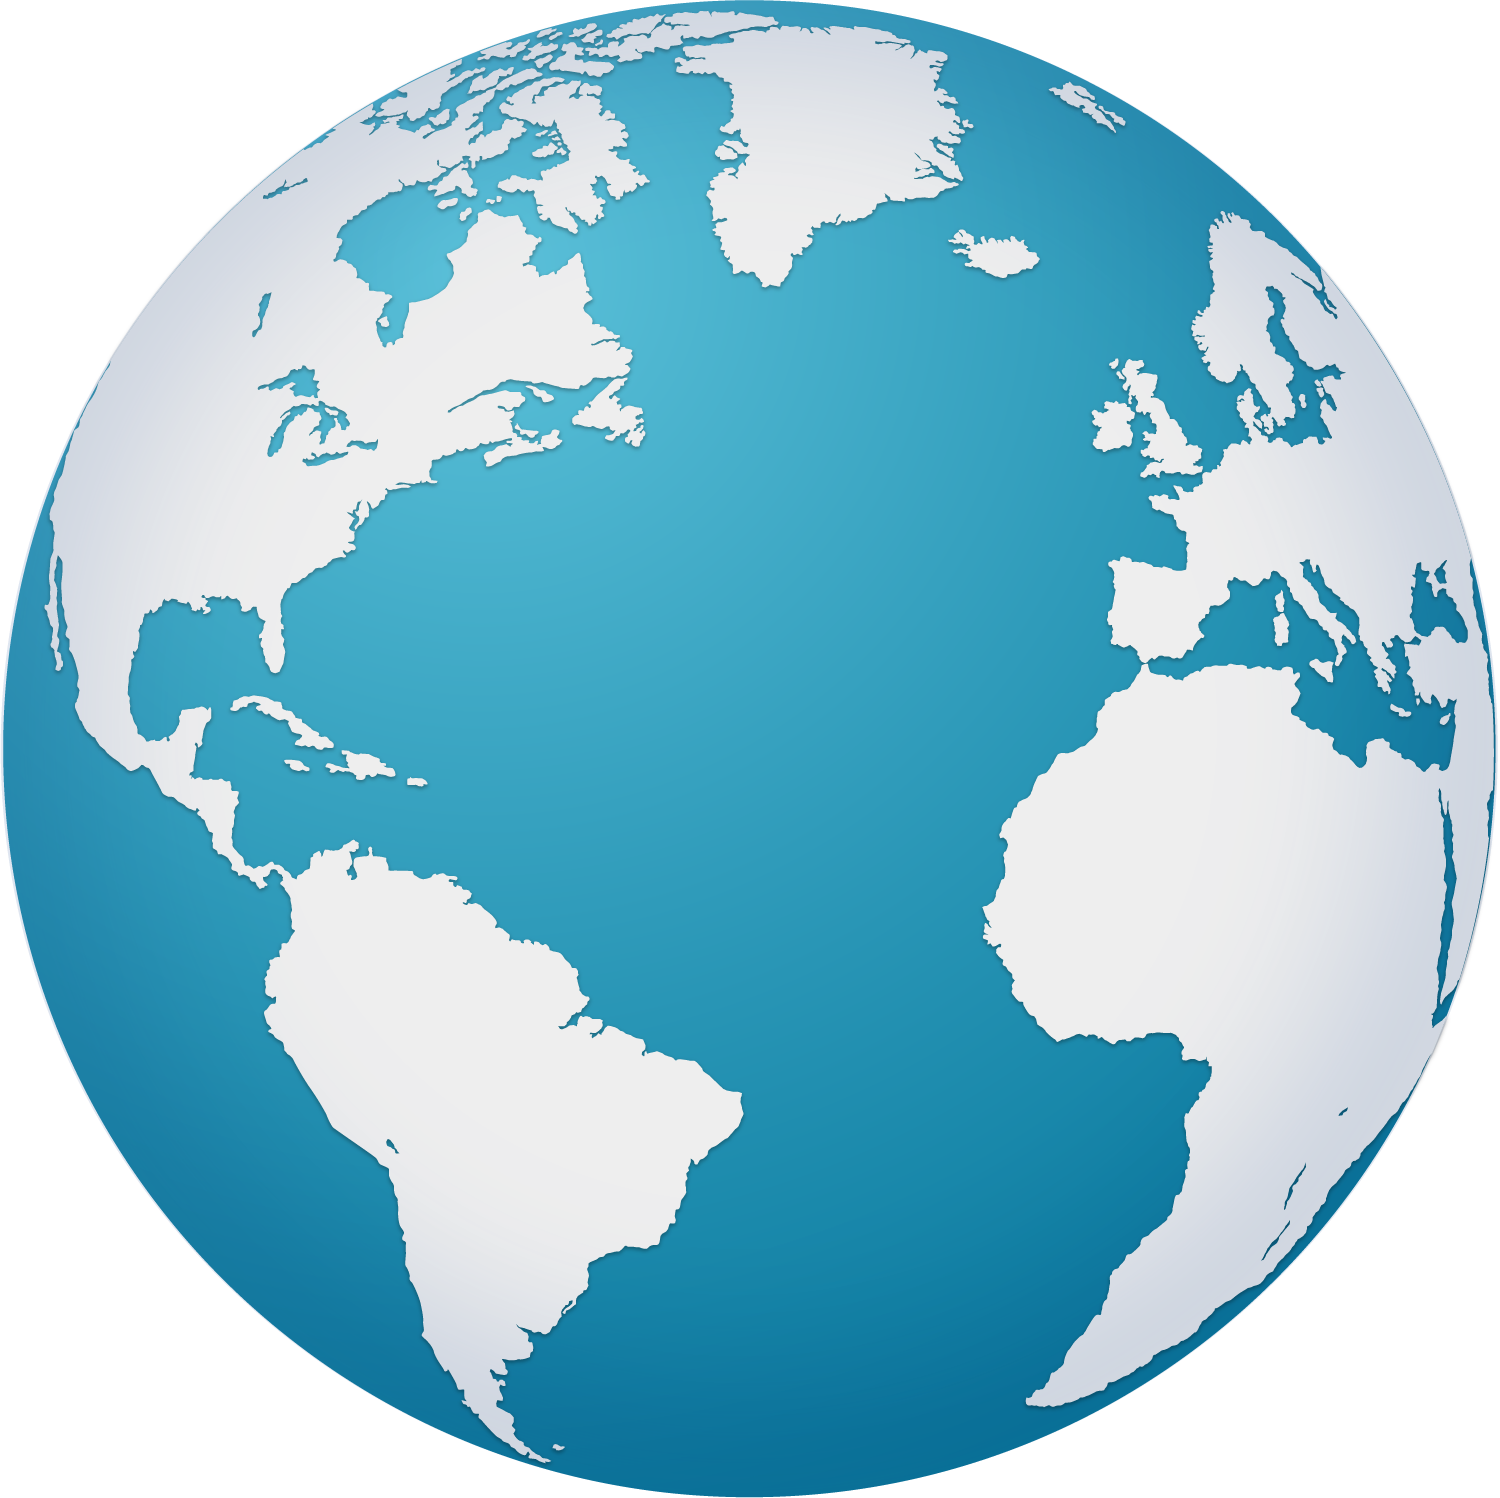 Earth Globe World Map - Earth Globe World Map (1500x1498)